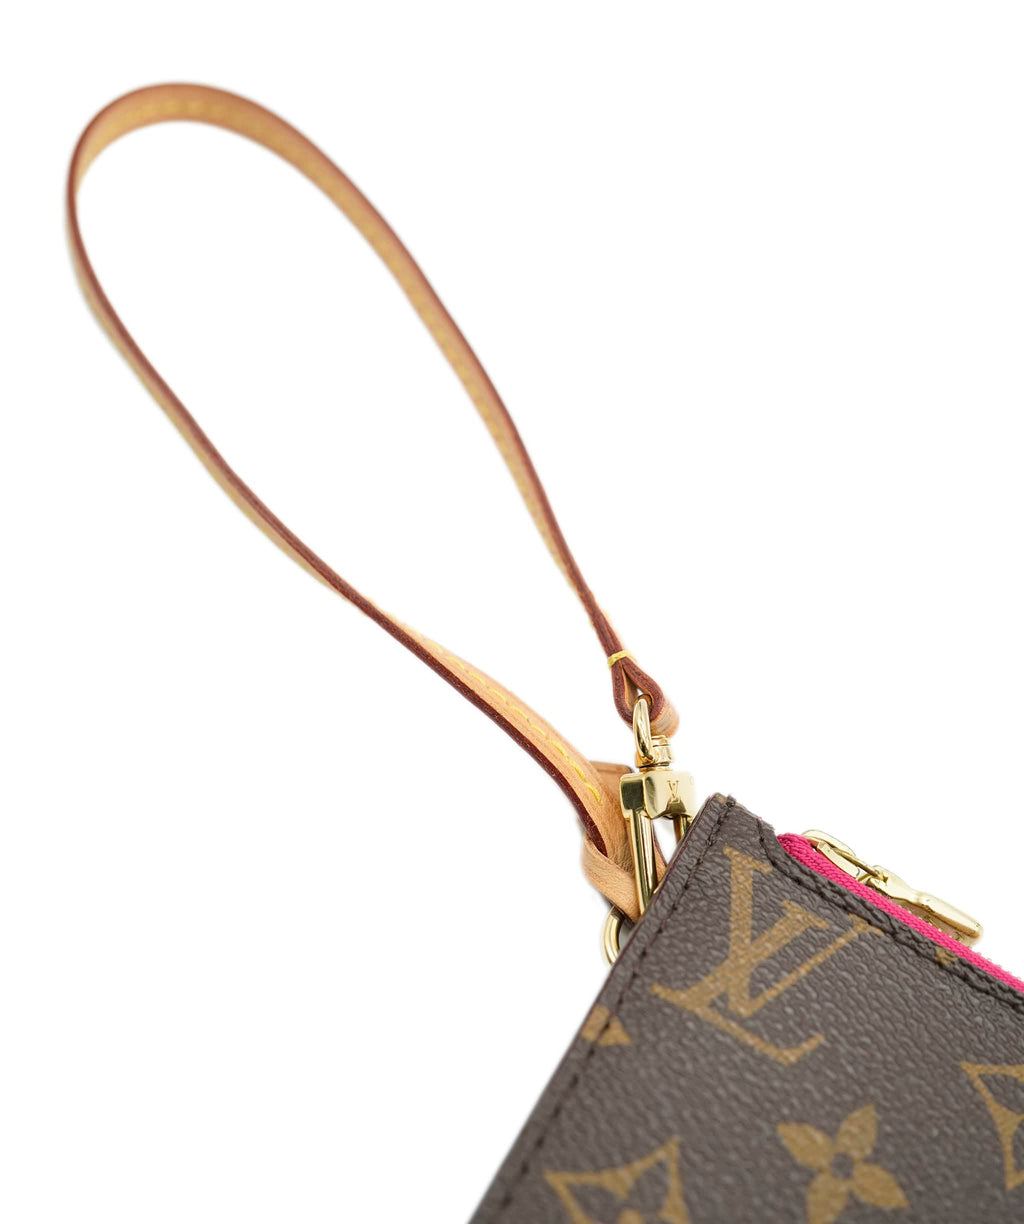 Louis Vuitton Monogram Pouch / Wristlet PXL1441 – LuxuryPromise